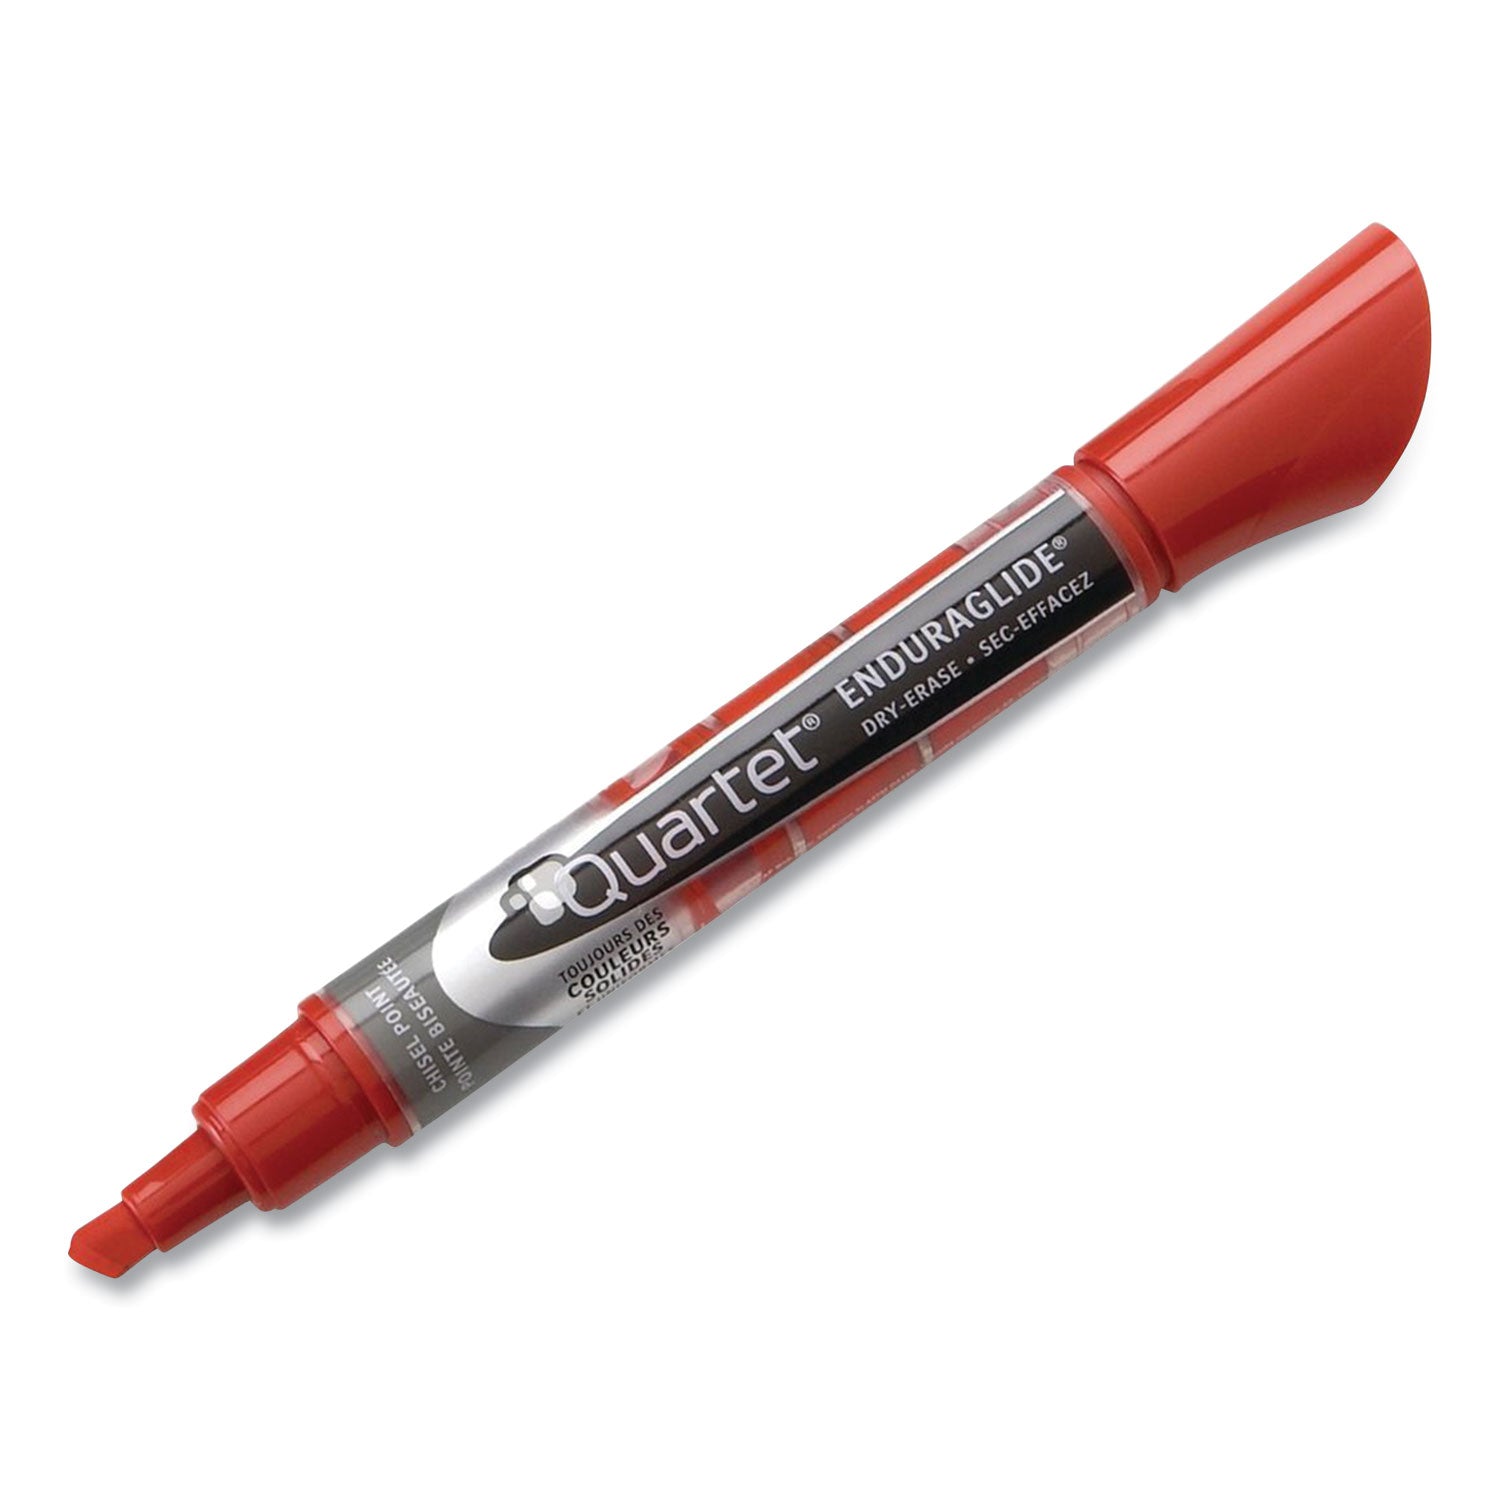 enduraglide-dry-erase-marker-kit-with-cleaner-and-eraser-broad-chisel-tip-assorted-colors-4-pack_qrt5001m4sk - 4